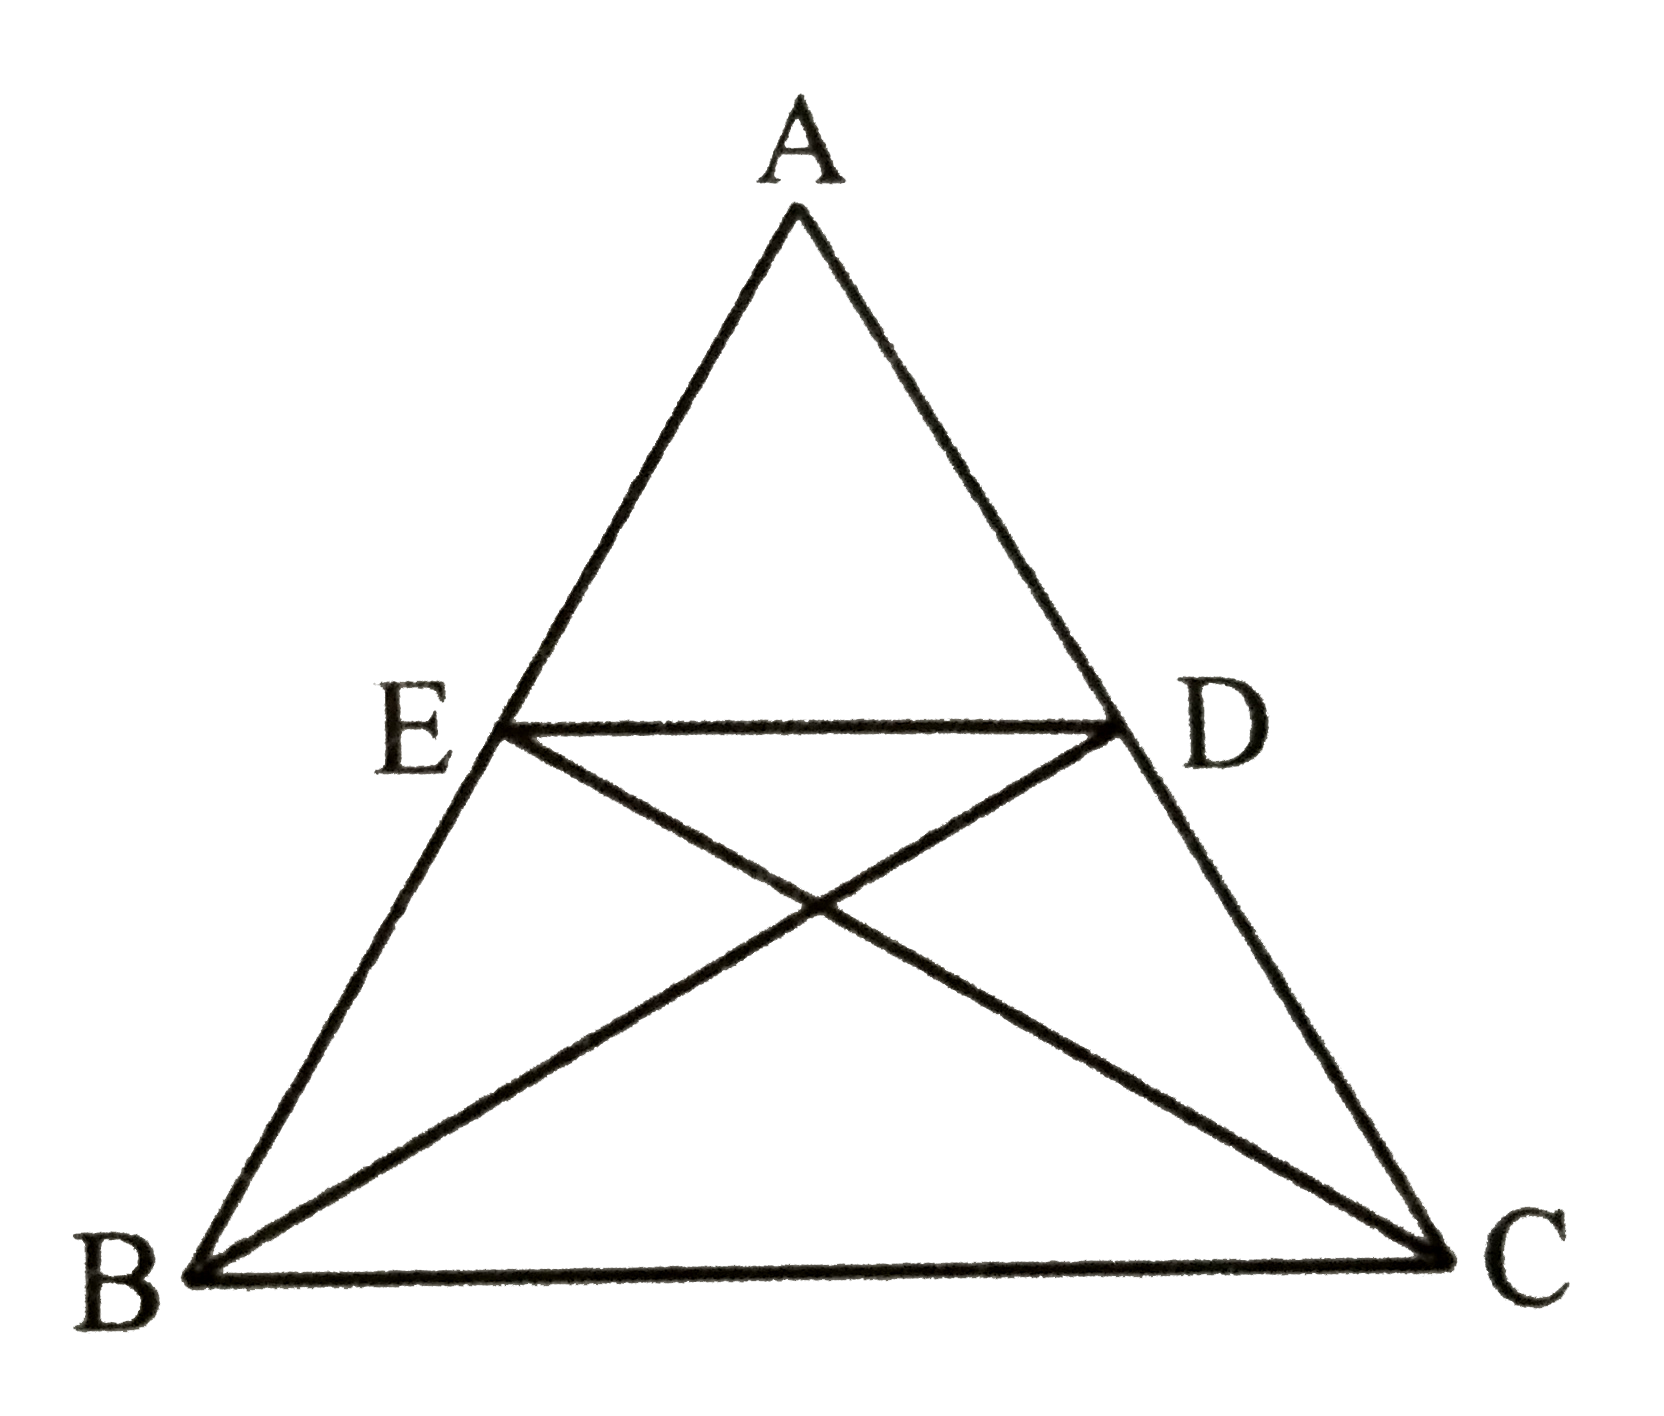 एक त्रिभुज ABC का angleB तथा angleC का अर्द्धक विपरीत भुजा पर क्रमशः D तथा E में मिलता है । यदि DE।।BC तो सिद्ध कीजिए कि त्रिभुज समिद्विबाहु है ।